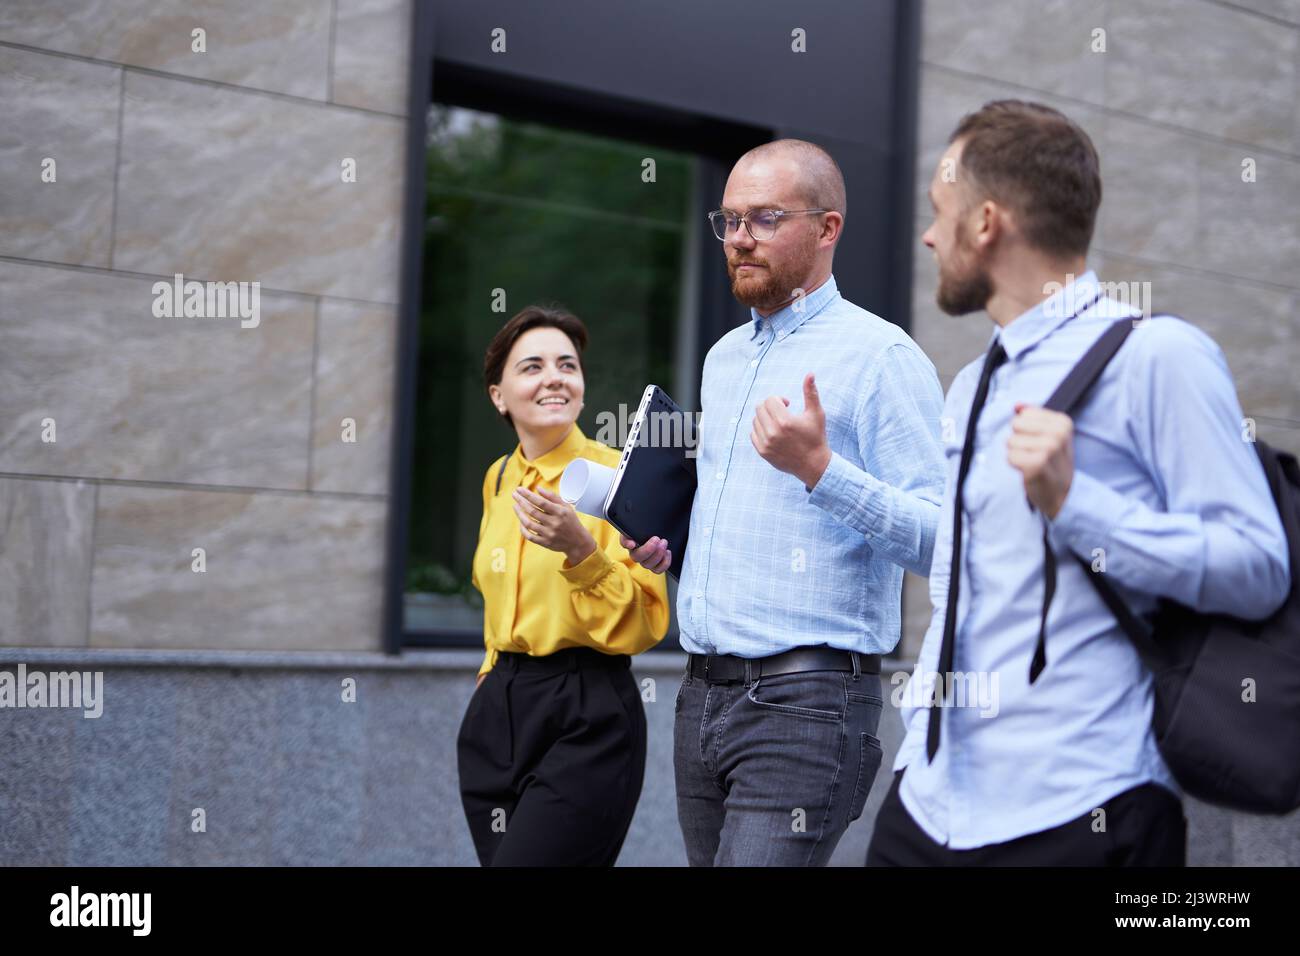 Geschäftsleute Brainstorming oder Diskussion Projekt im Freien zu Fuß. Drei Angestellte in formeller Kleidung, die in der Innenstadt in der Nähe des Büros auf der Straße entlang gehen, mit städtischem Hintergrund. Hochwertige Fotos Stockfoto